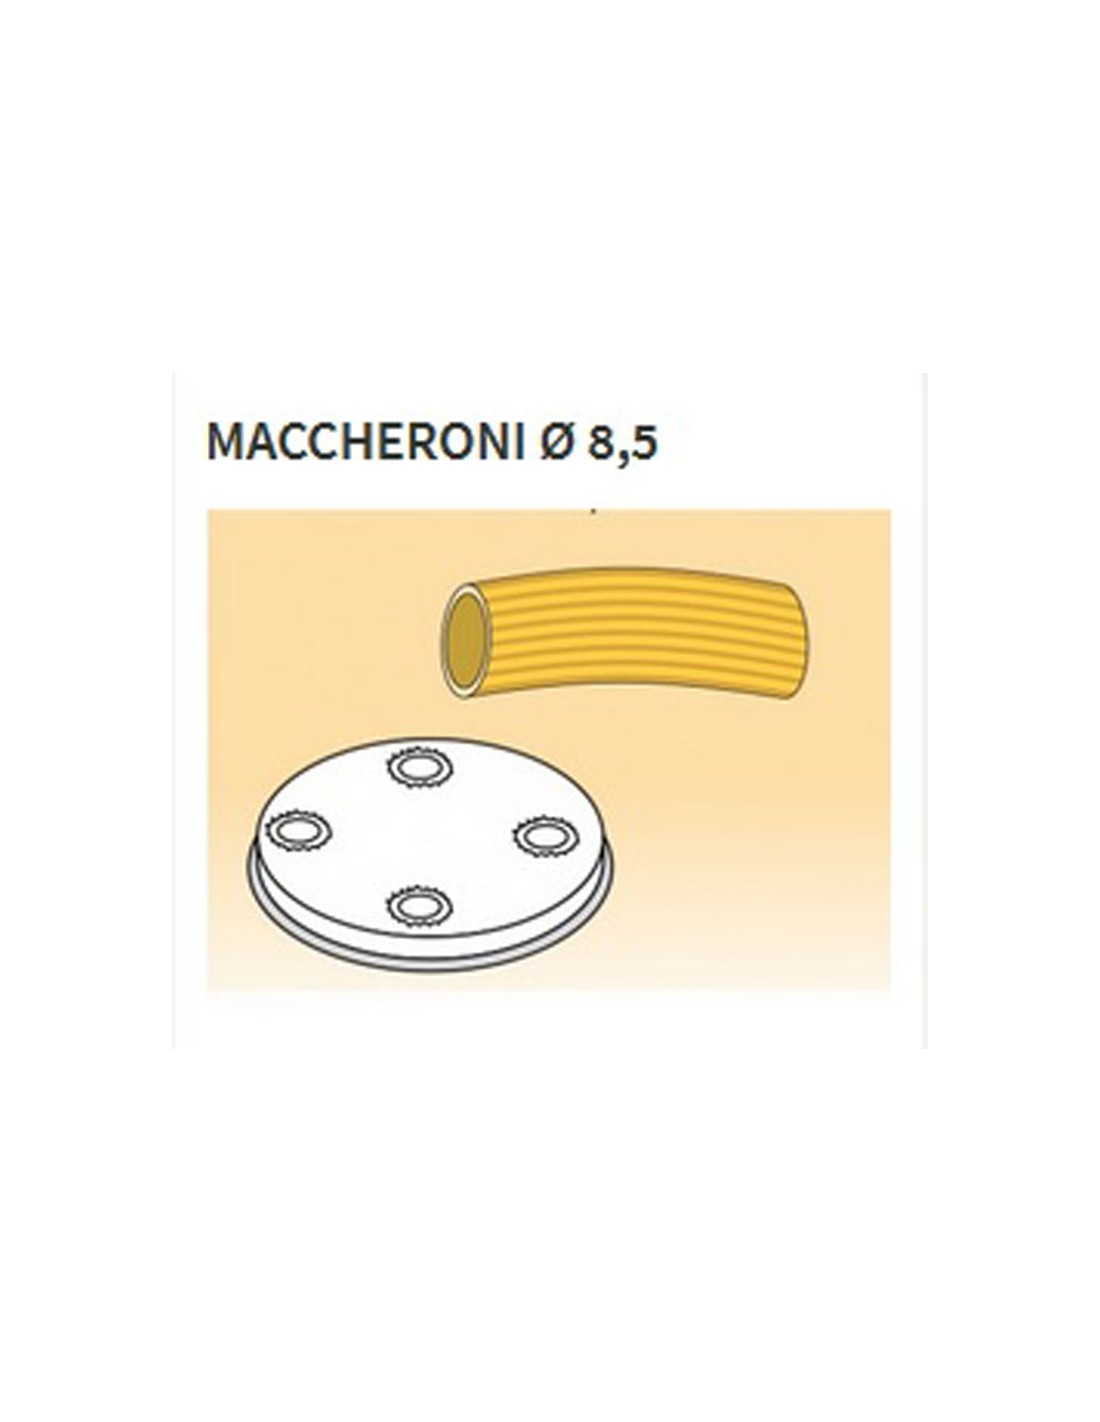 Matrices de aleación de latón de varias formas - Bronce - Para máquina de pasta fresca modelo MPF8N - Maccheroni Ø mm 8.5